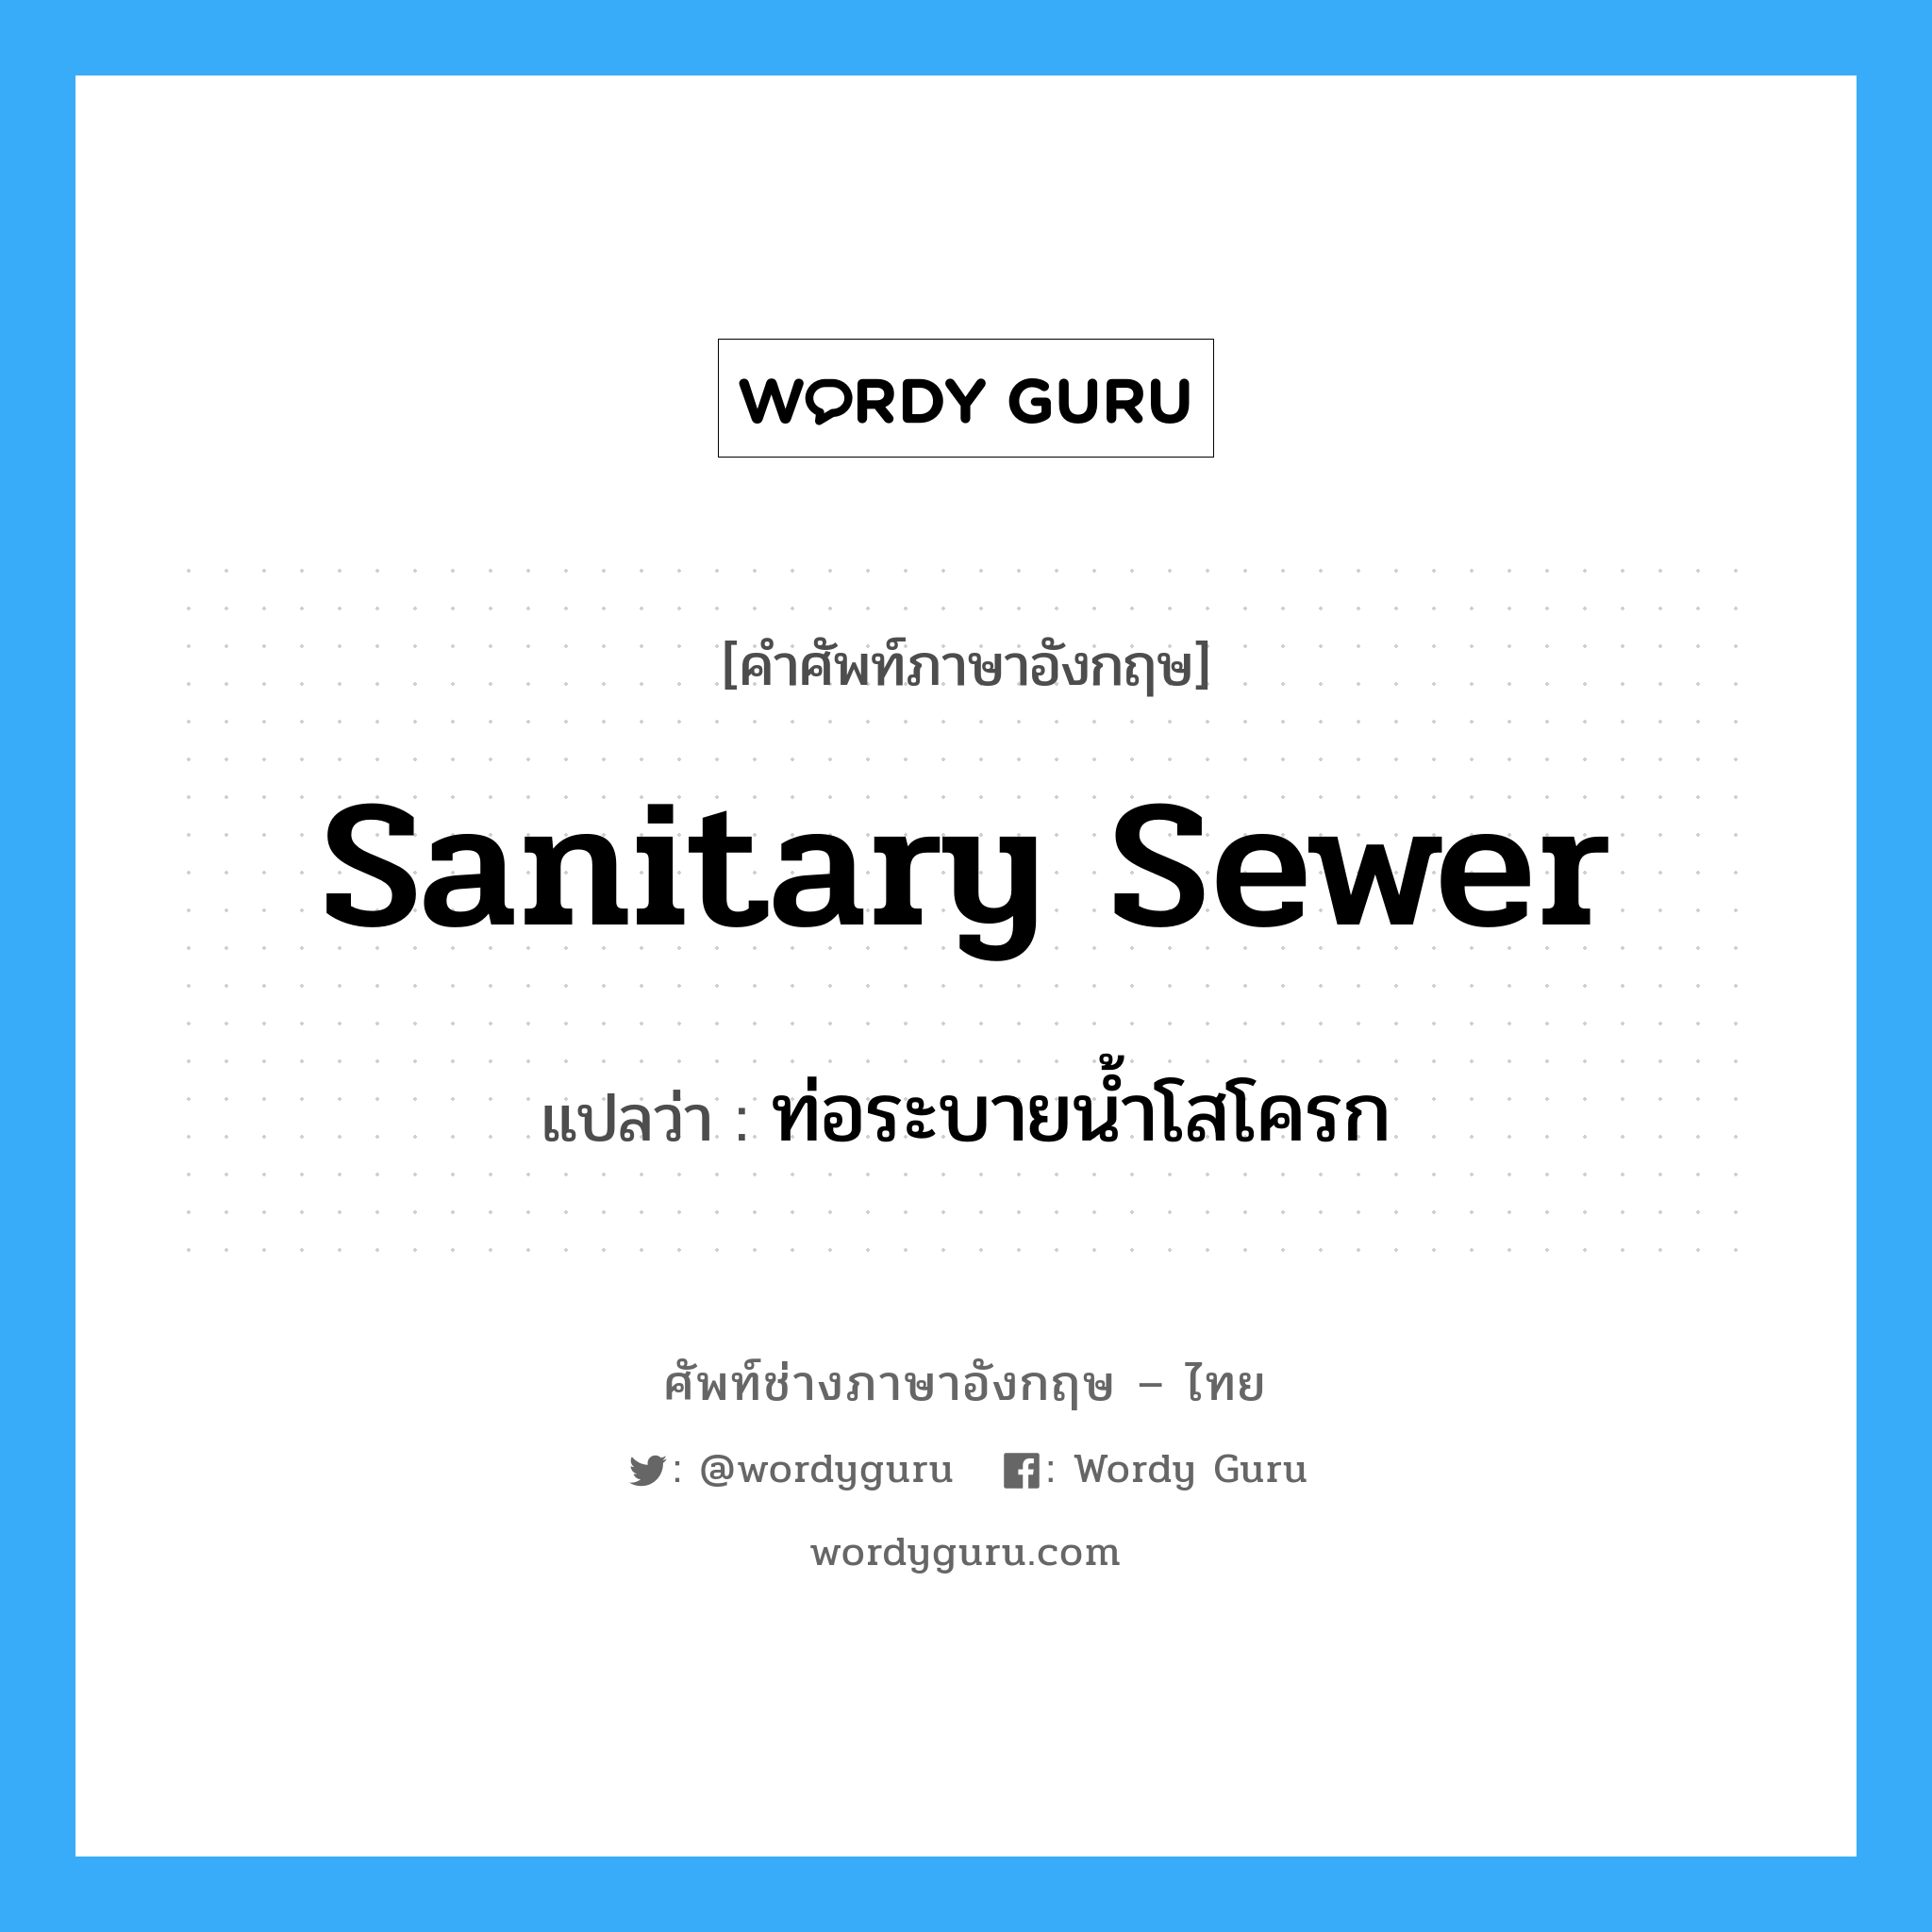 ท่อระบายน้ำโสโครก ภาษาอังกฤษ?, คำศัพท์ช่างภาษาอังกฤษ - ไทย ท่อระบายน้ำโสโครก คำศัพท์ภาษาอังกฤษ ท่อระบายน้ำโสโครก แปลว่า sanitary sewer